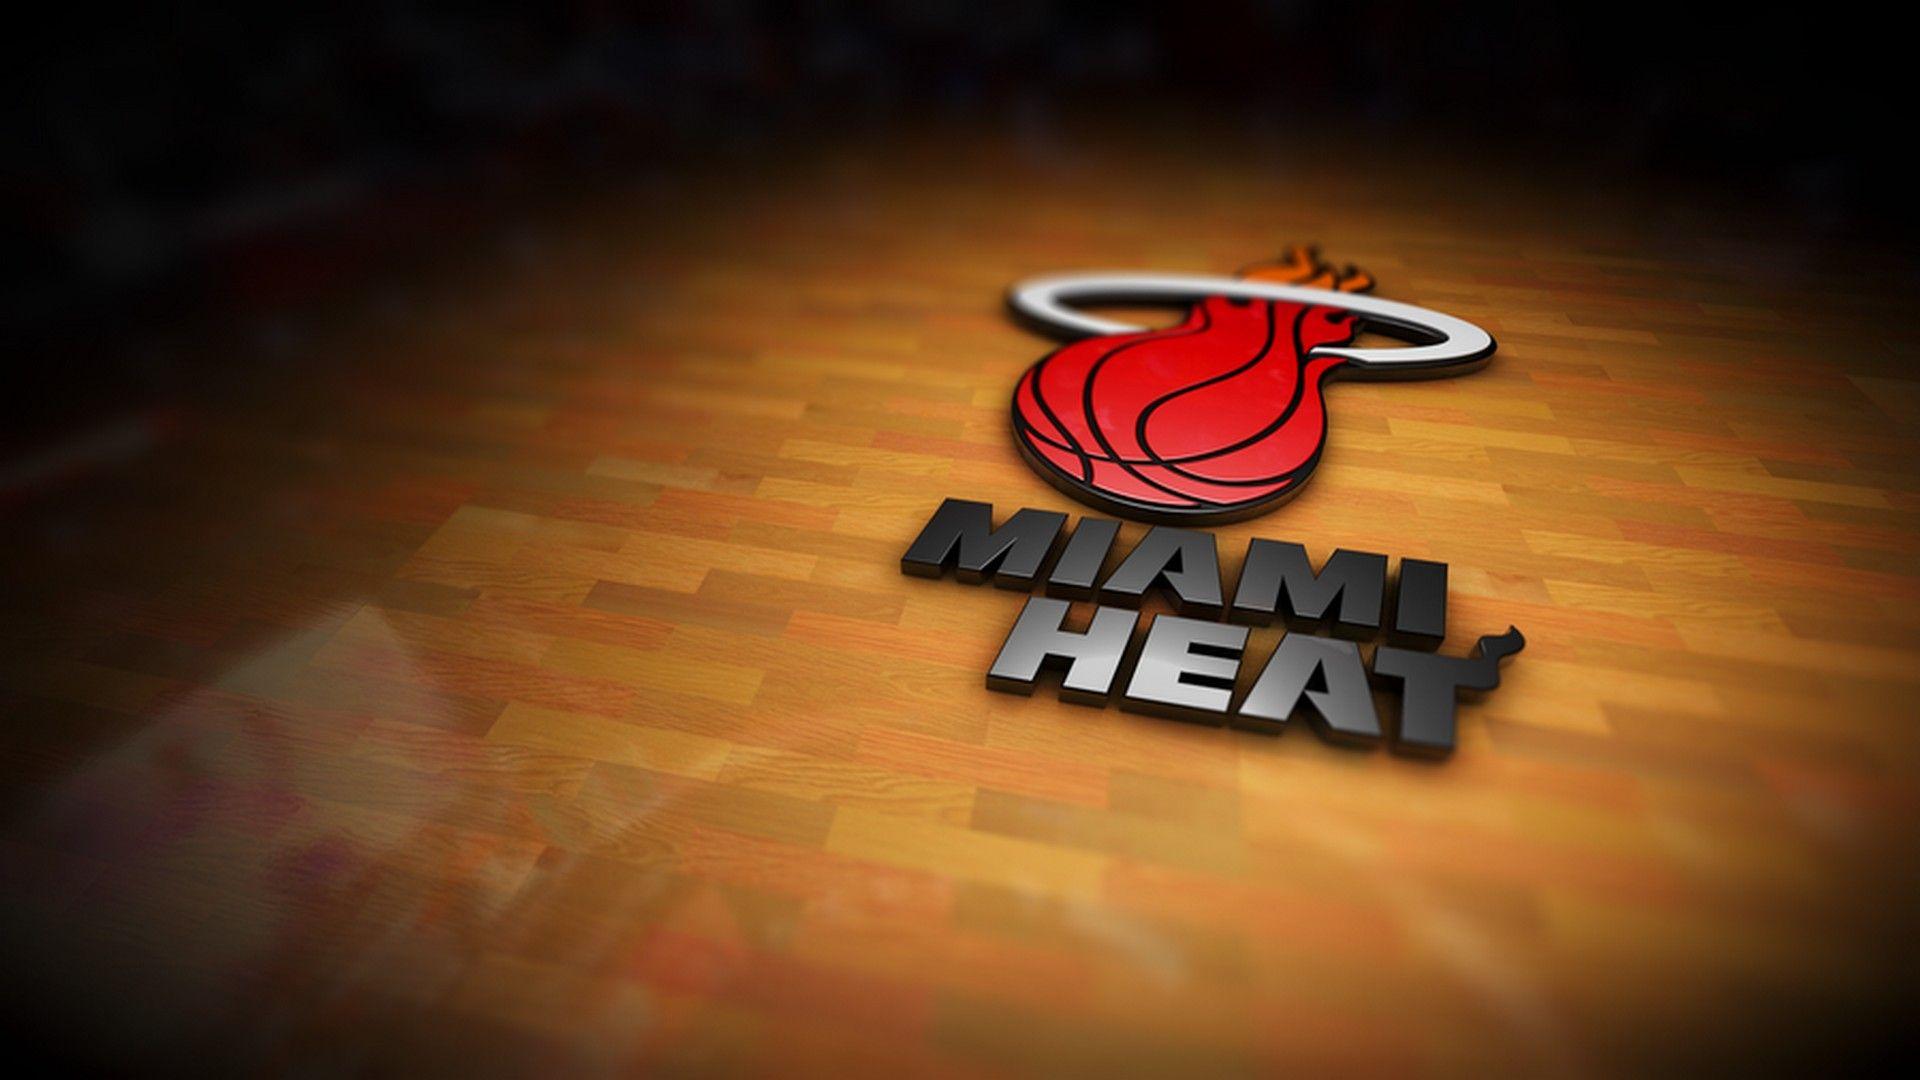 1920x1080 Miami Heat cho Hình nền máy tính để bàn.  Hình nền bóng rổ 2020